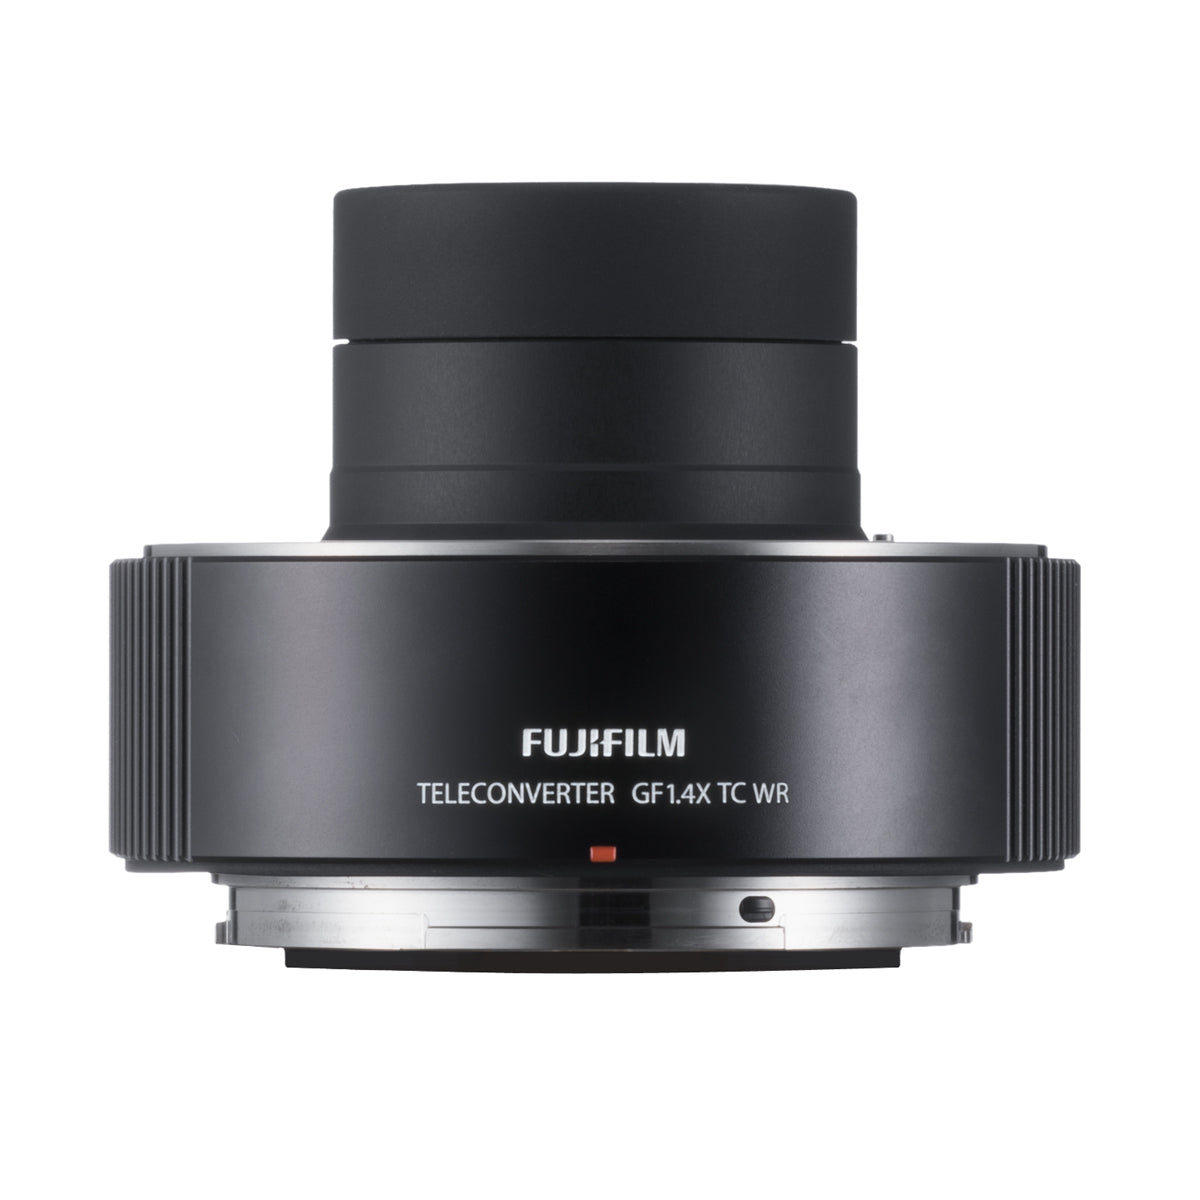 Fujifilm GF 1.4x TC WR Teleconverter